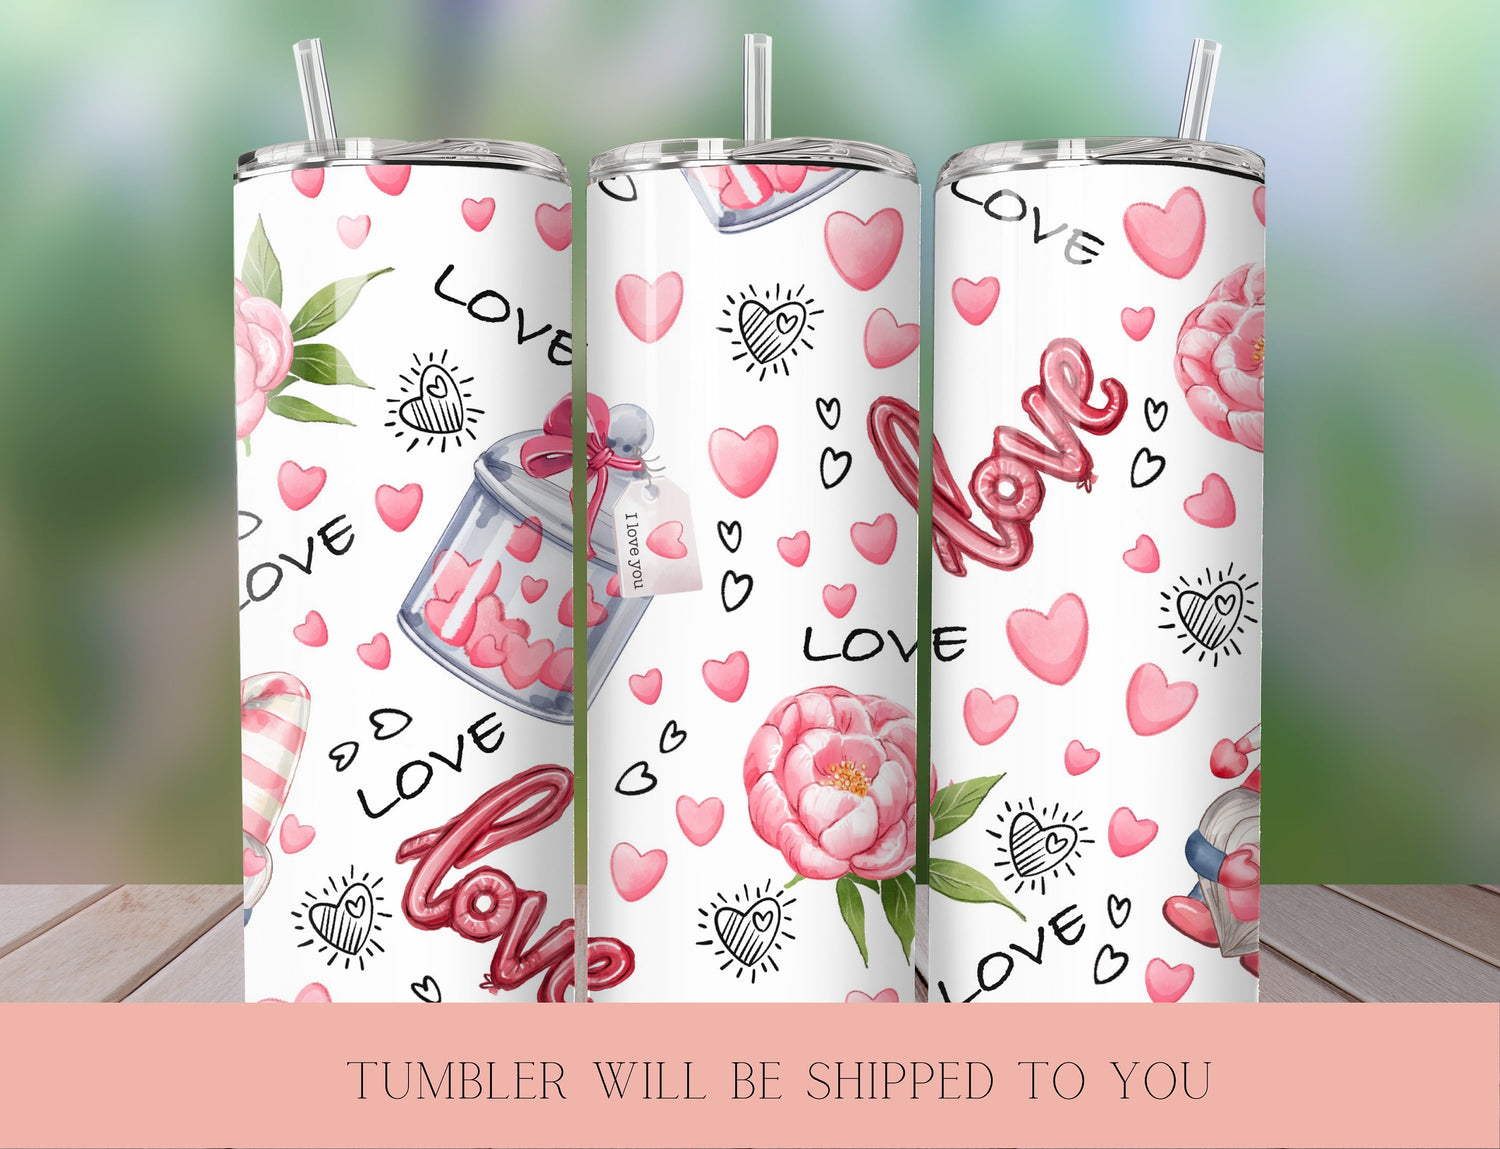 Pink Heart Tumbler | Love Skinny Tumbler | Pink Flower Tumbler | Heart Stainless Steel Tumbler | Romantic Tumbler - Inspired BYou Home Decor